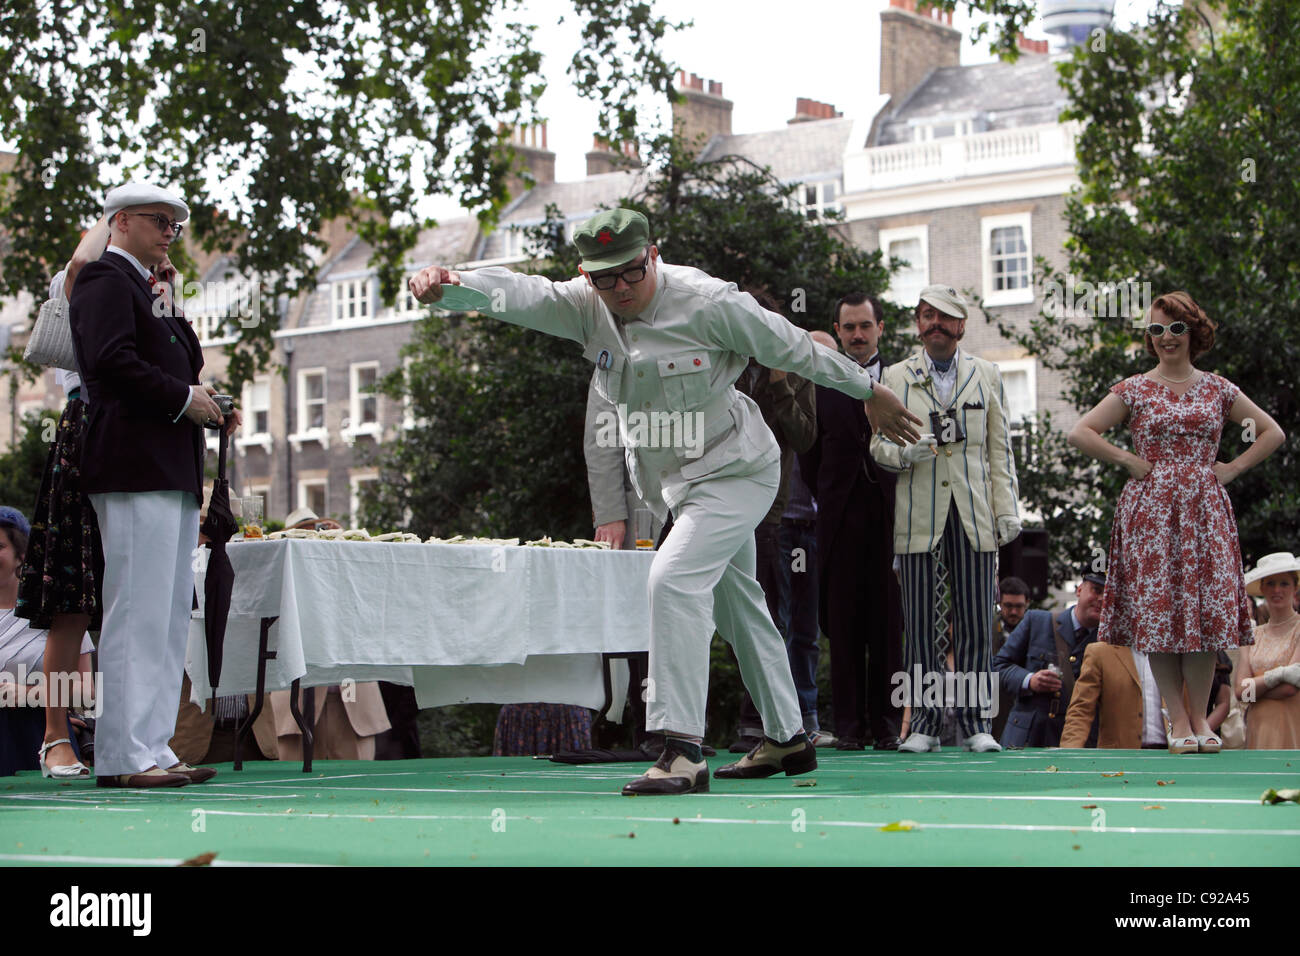 "Sándwich de pepino Discus' en estrafalario Chap anual Olimpíada, que se celebra en verano, Bedford Square Gardens en Bloomsbury, Londres, Inglaterra Foto de stock